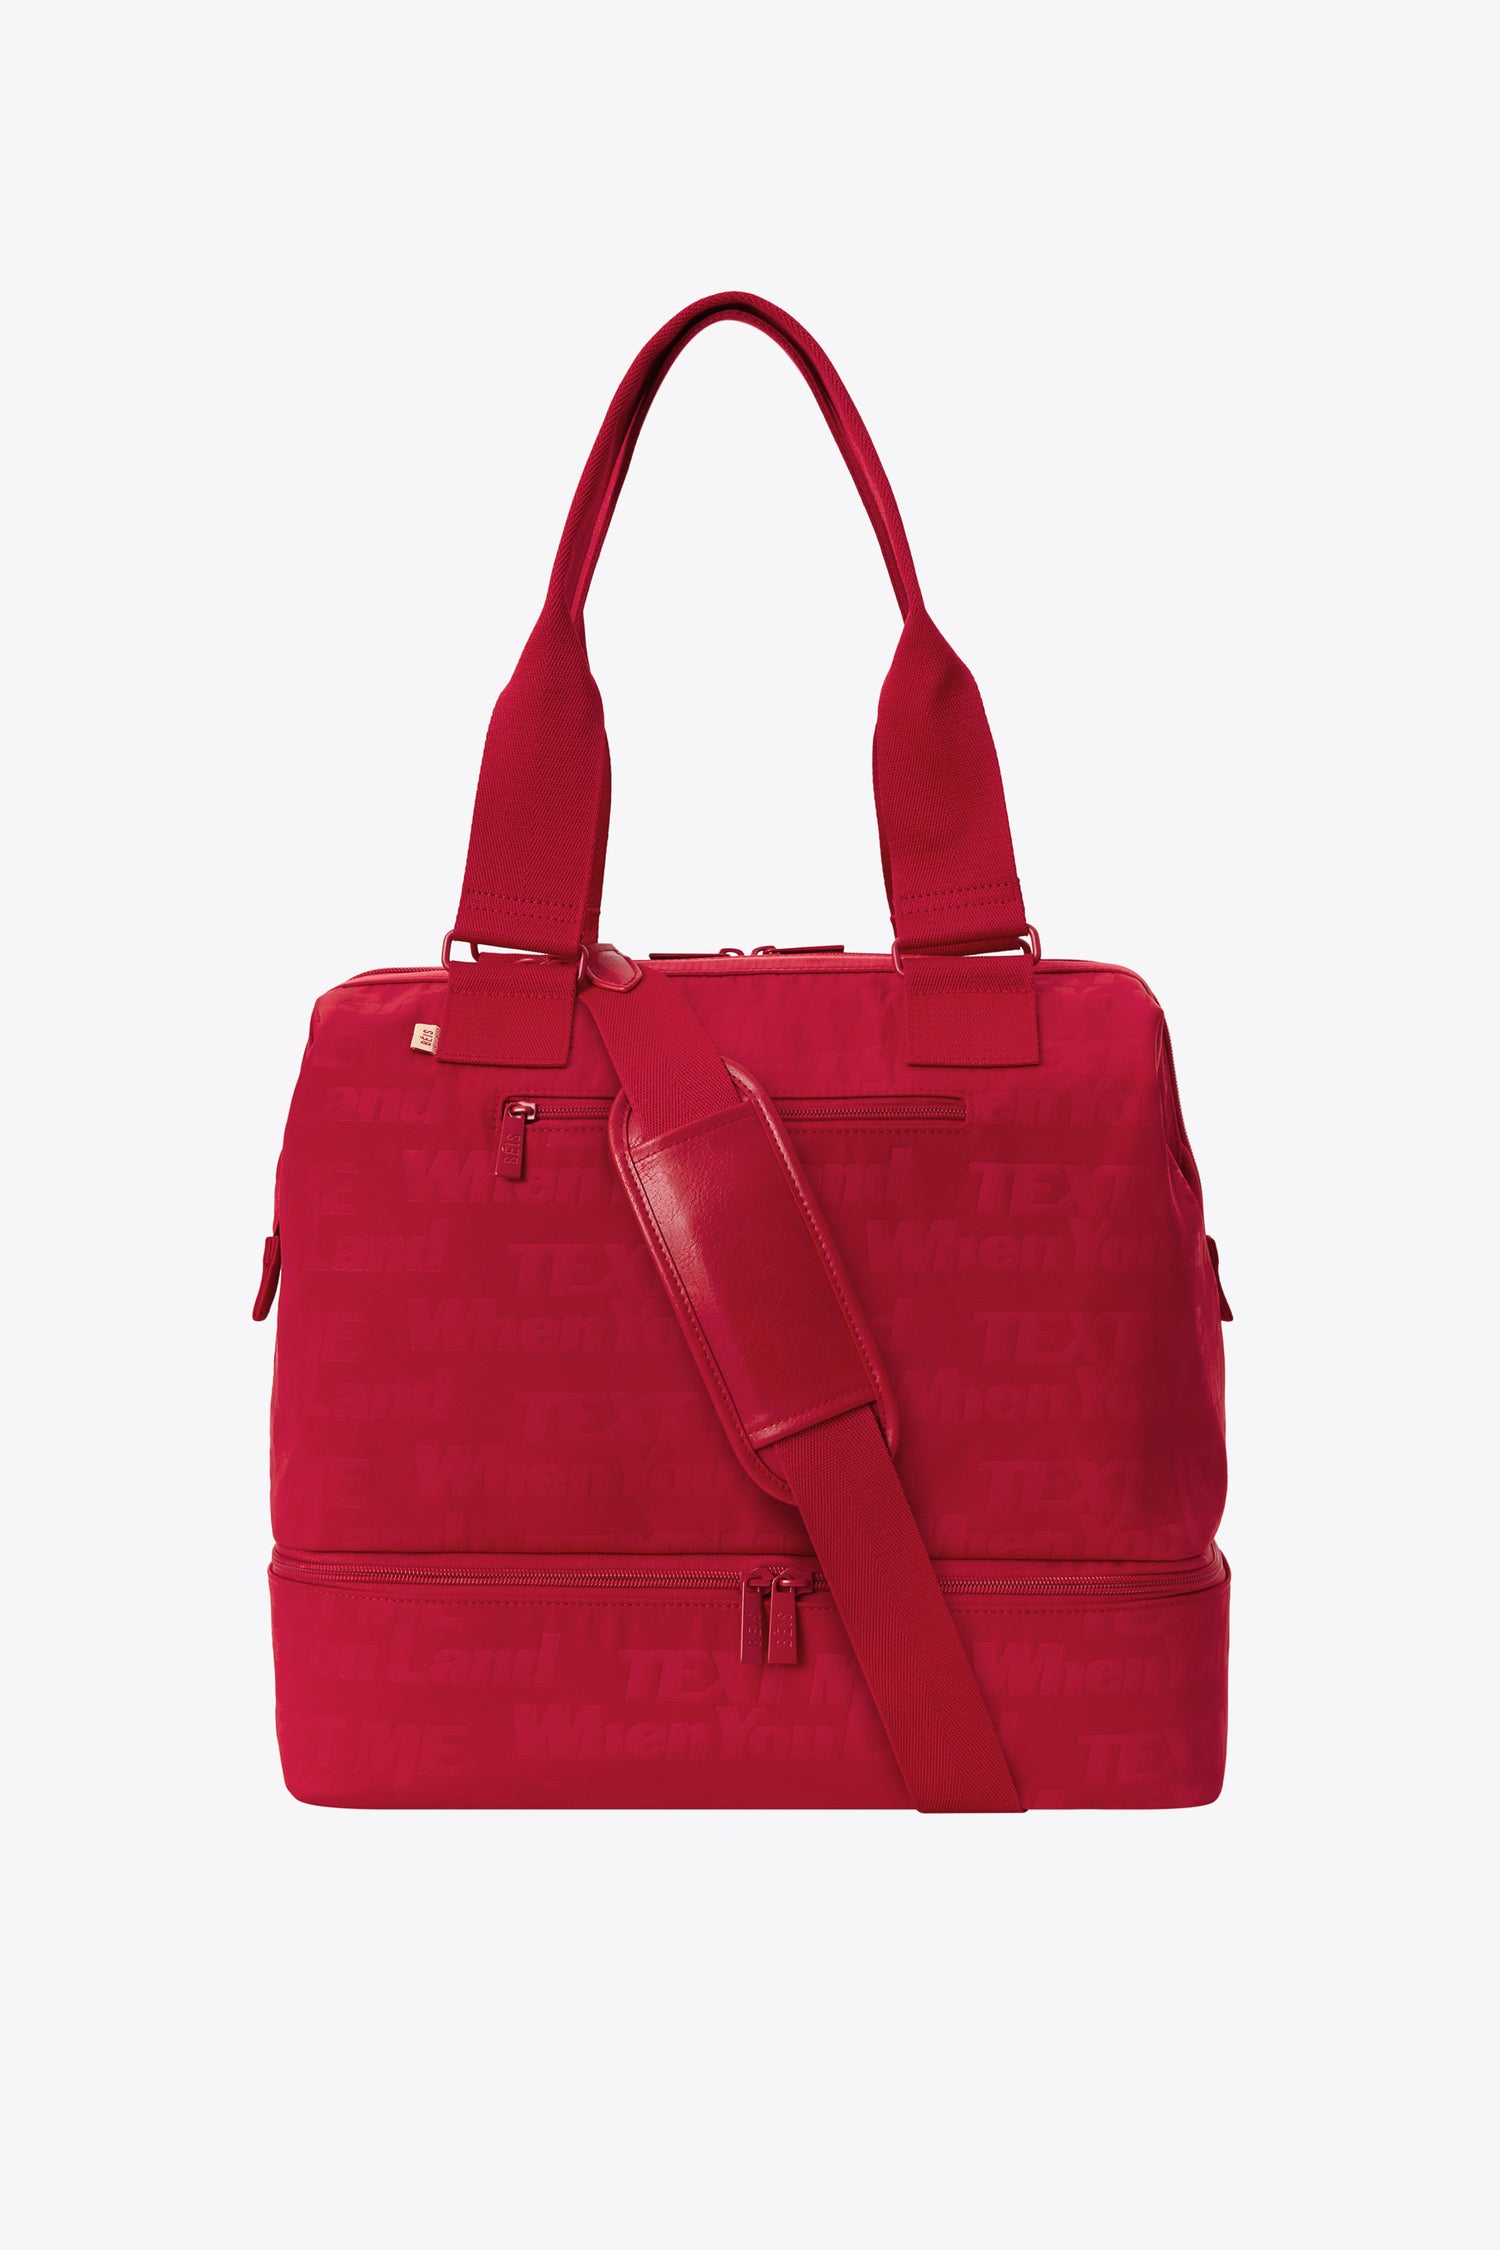 Red Travel Bags, Work Totes & Weekenders